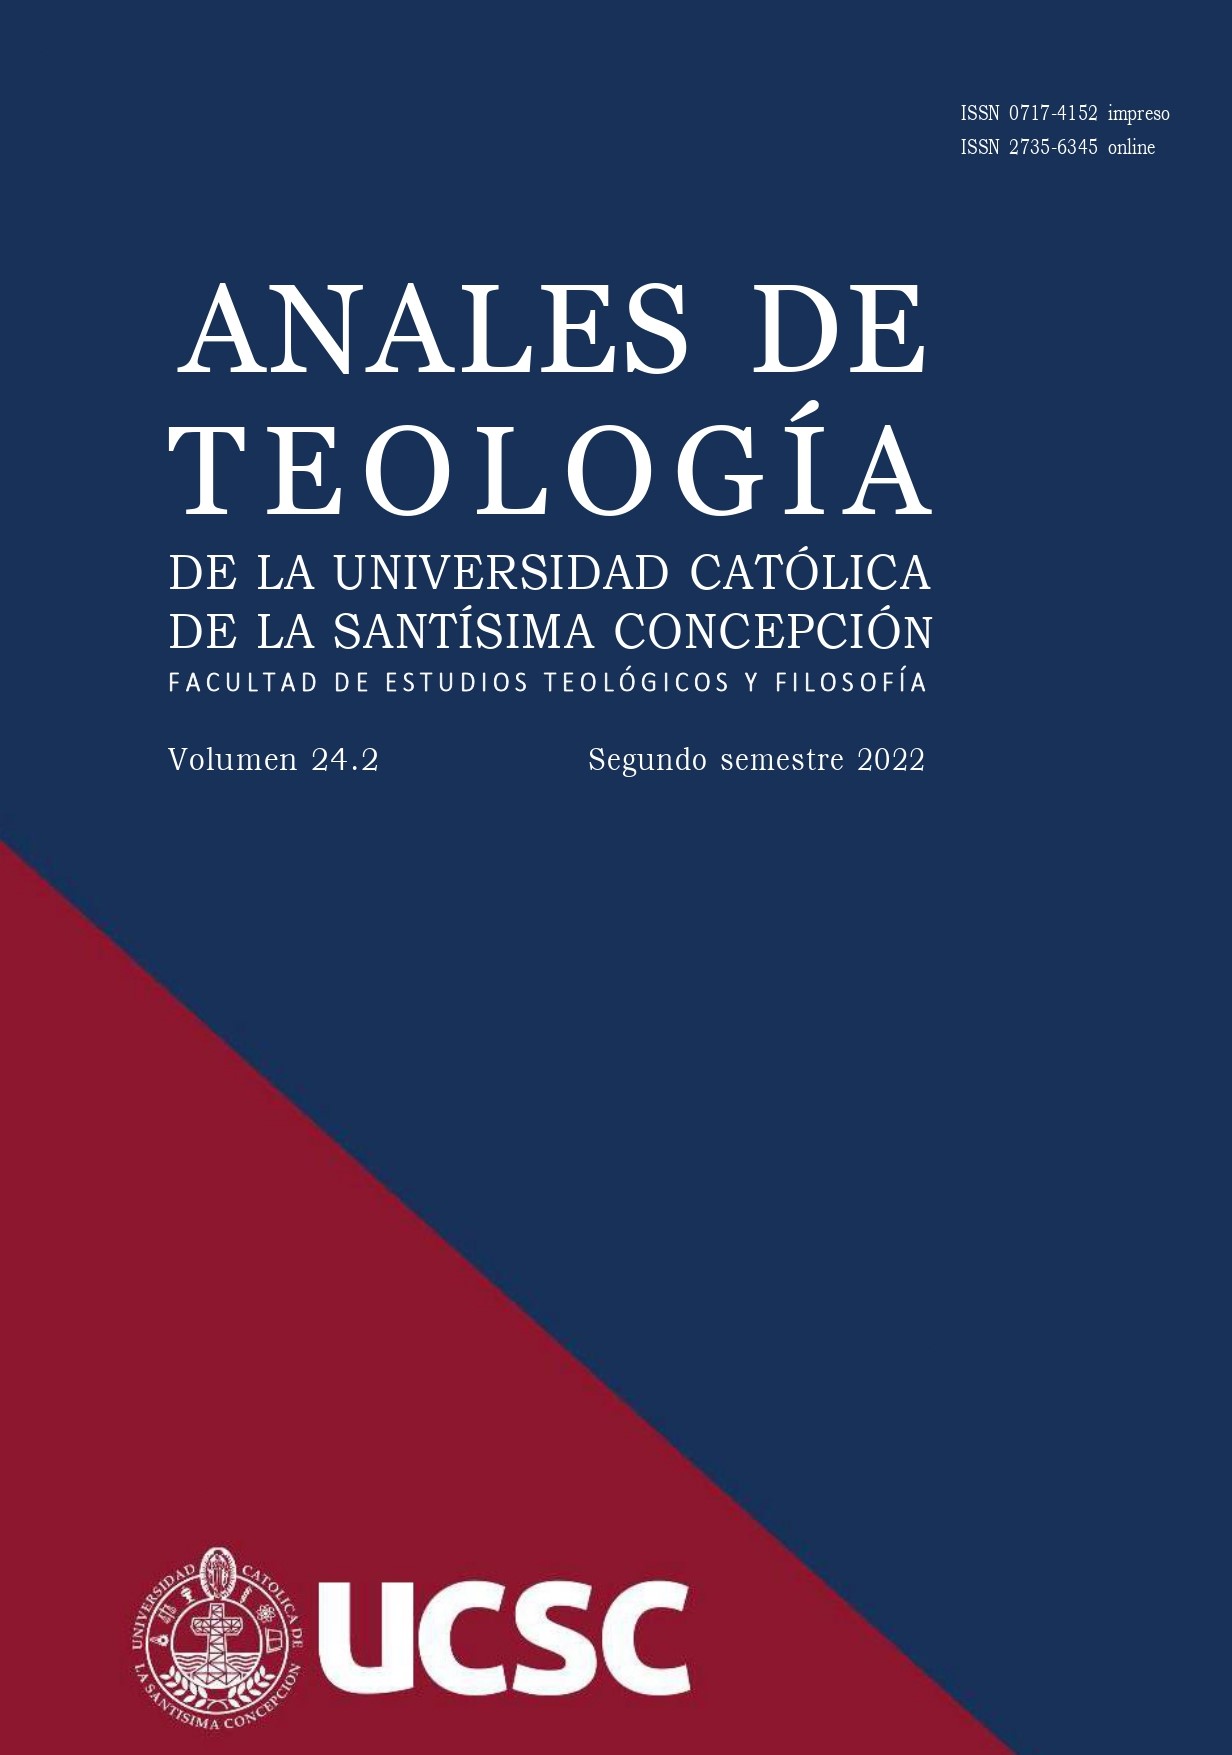 					View Vol. 14 No. 1 (2012): Anales de Teología | Enero - Junio 2012
				